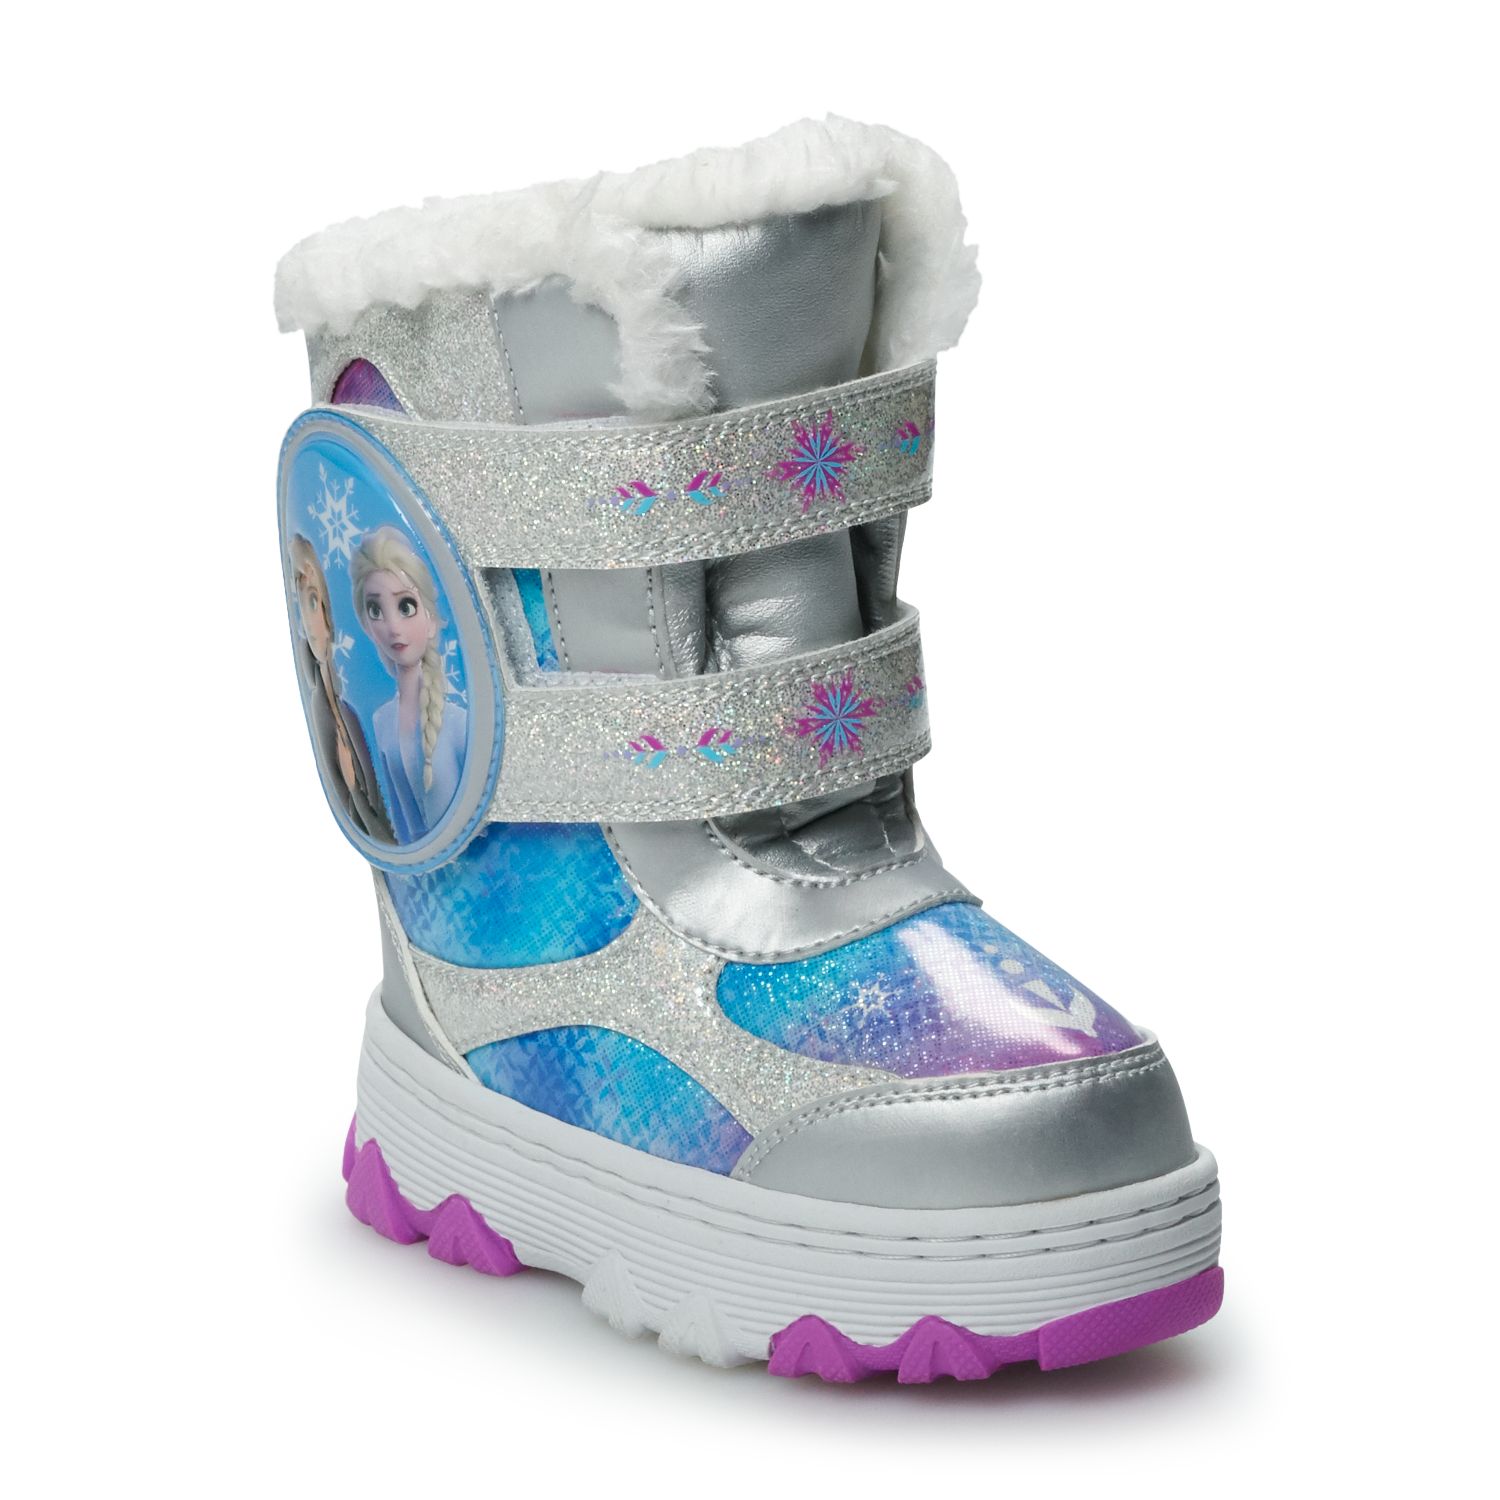 khols snow boots